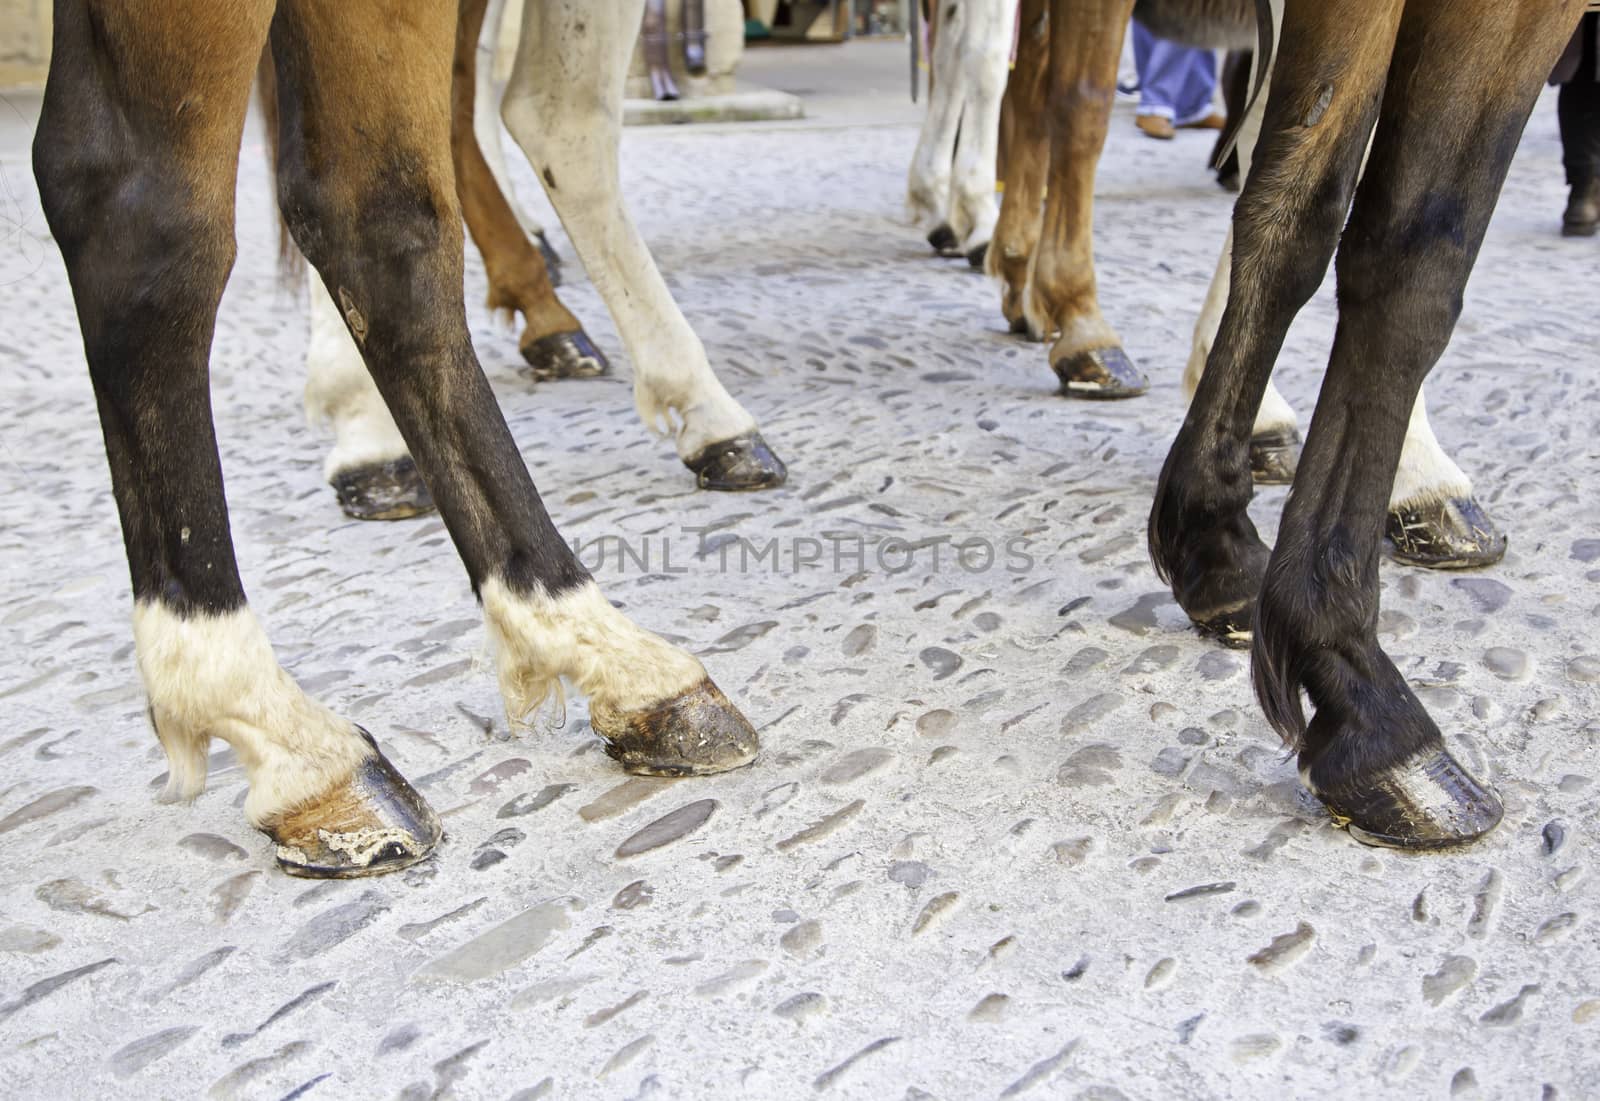 Horses legs by esebene